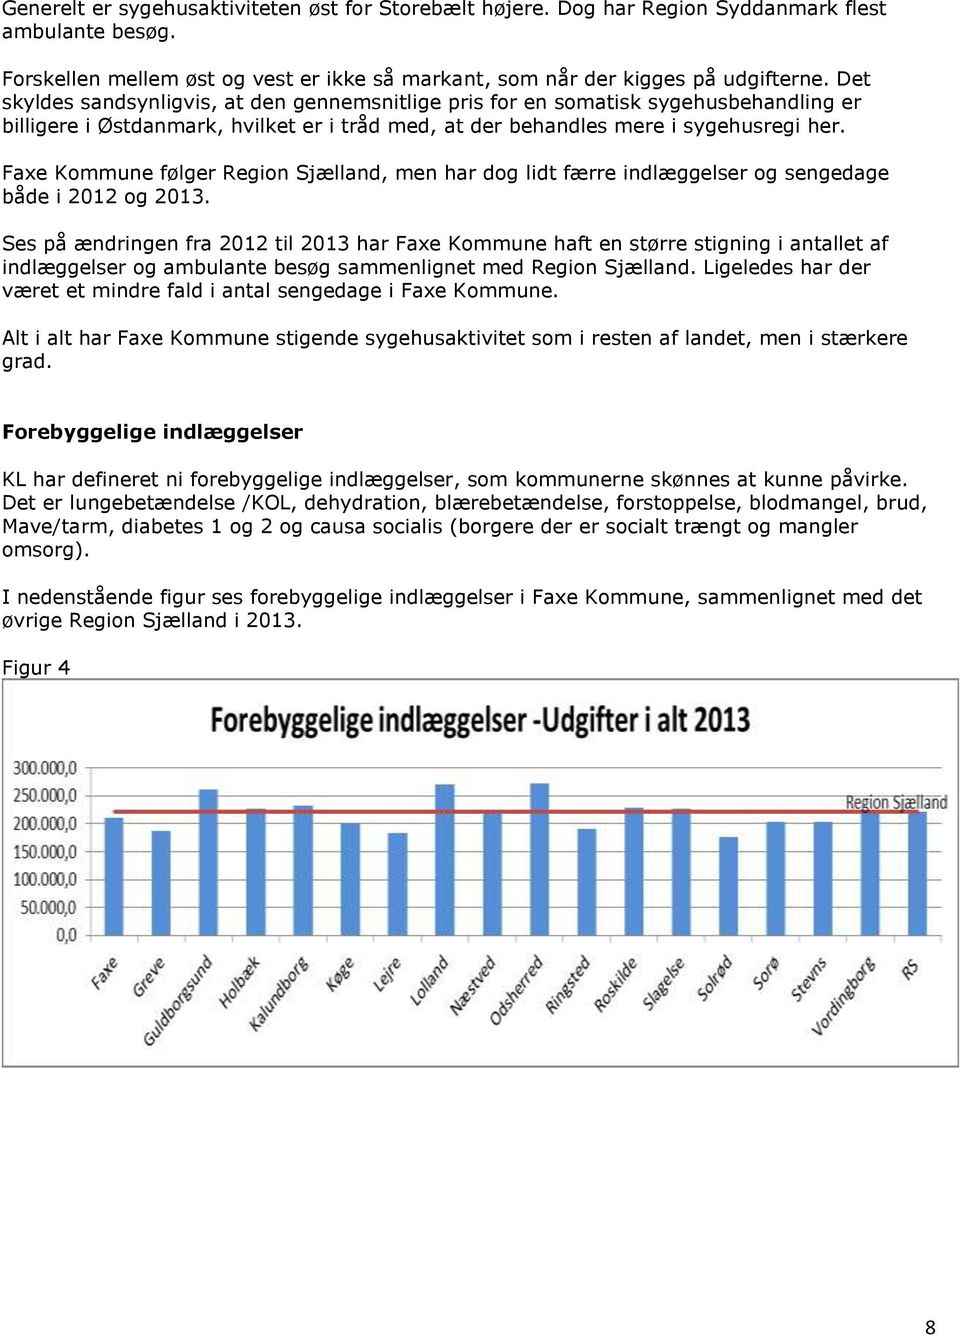 Faxe Kommune følger Region Sjælland, men har dog lidt færre indlæggelser og sengedage både i 2012 og 2013.